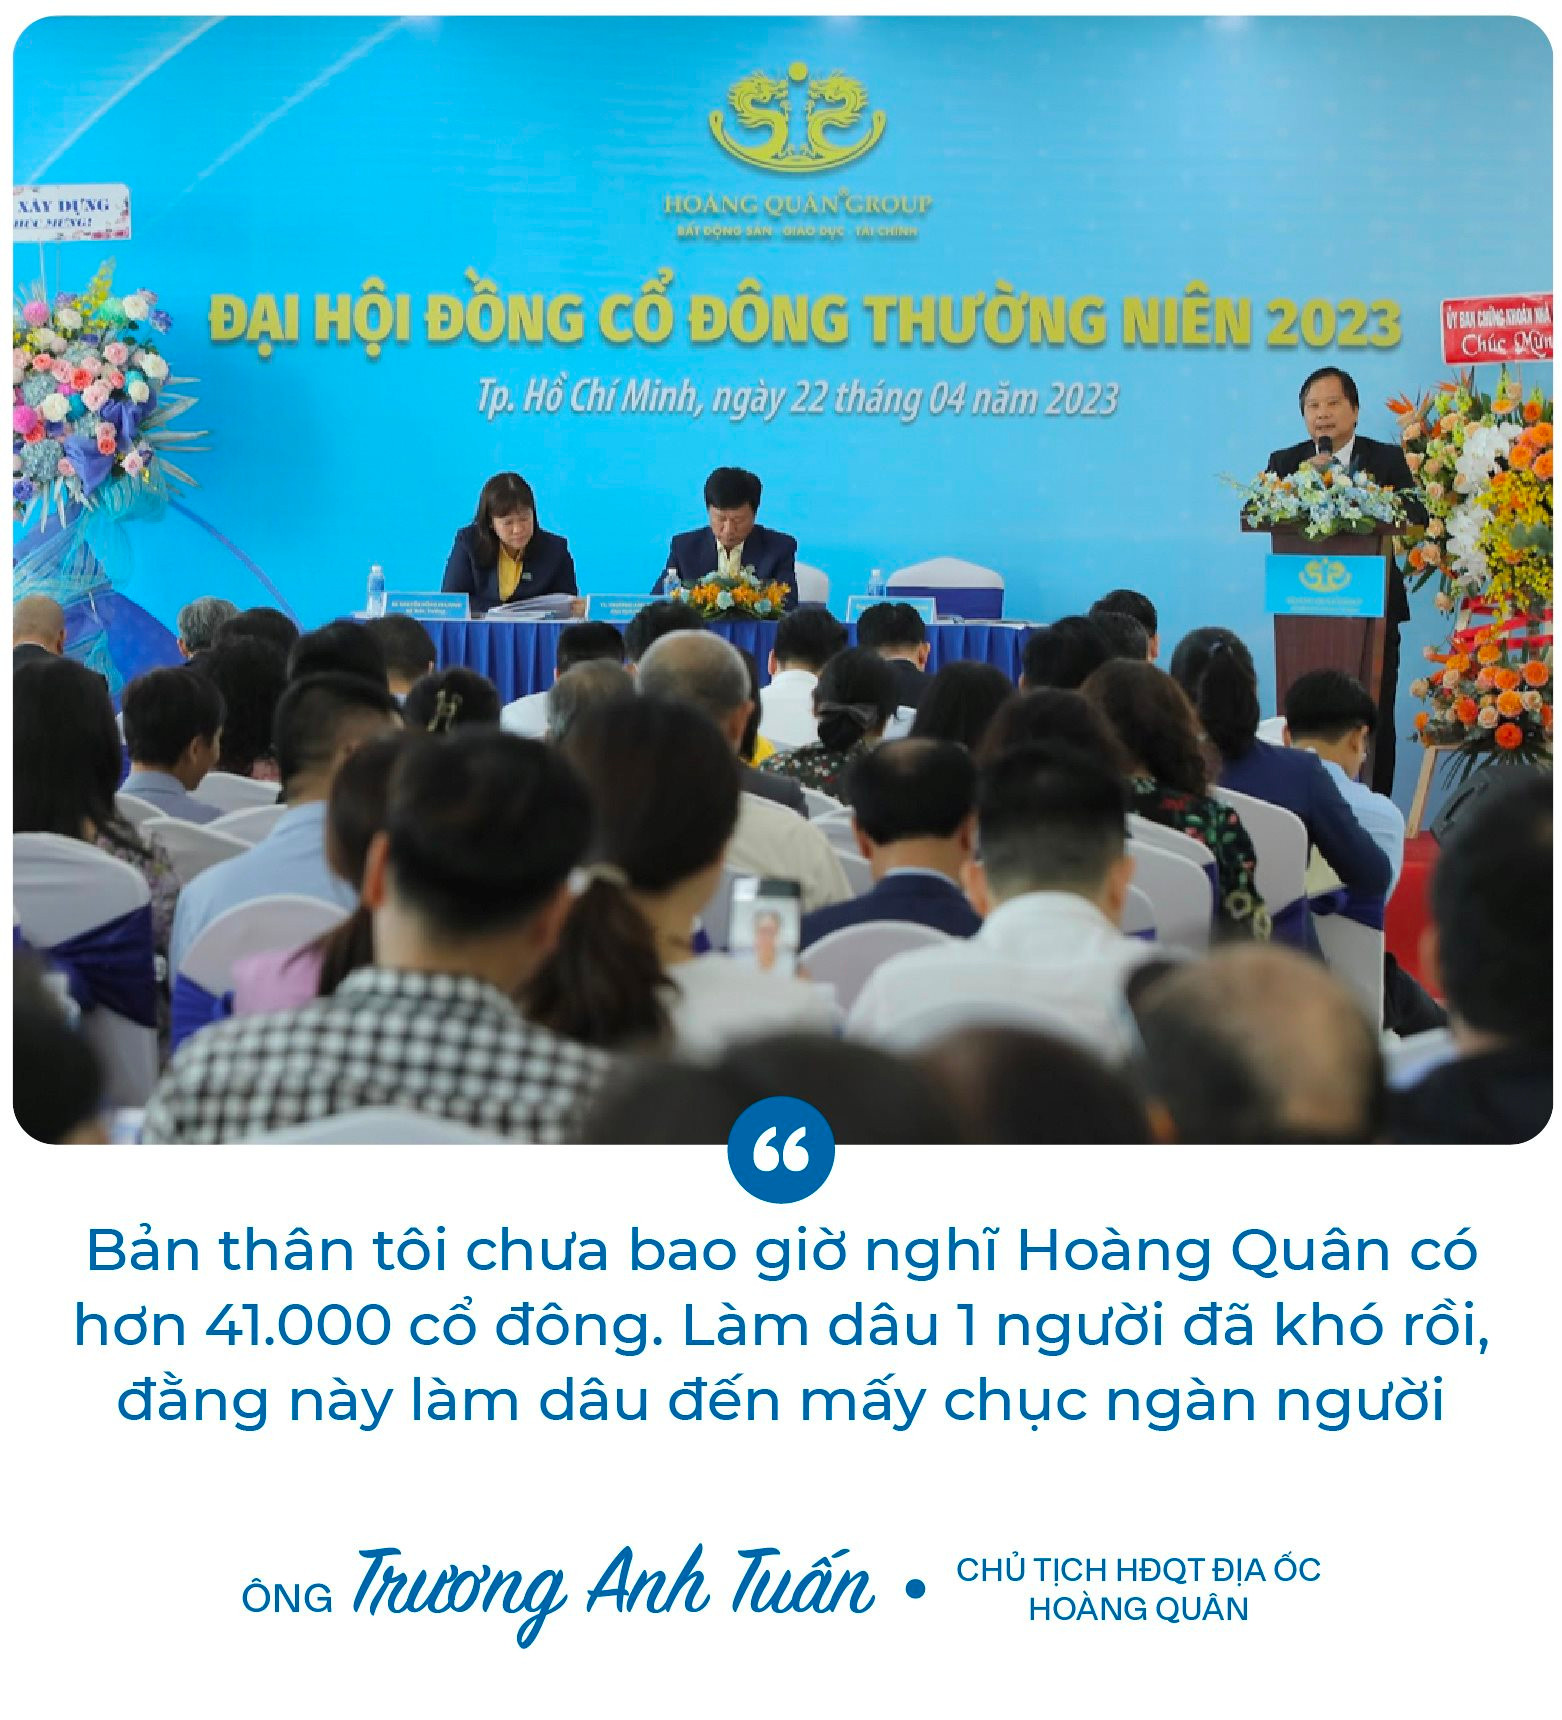 Chủ tịch Trương Anh Tuấn: ﻿“8 năm rồi Hoàng Quân (HQC) không đạt kế hoạch, và tôi cũng nói thật năm nay chưa chắc đạt” - Ảnh 2.